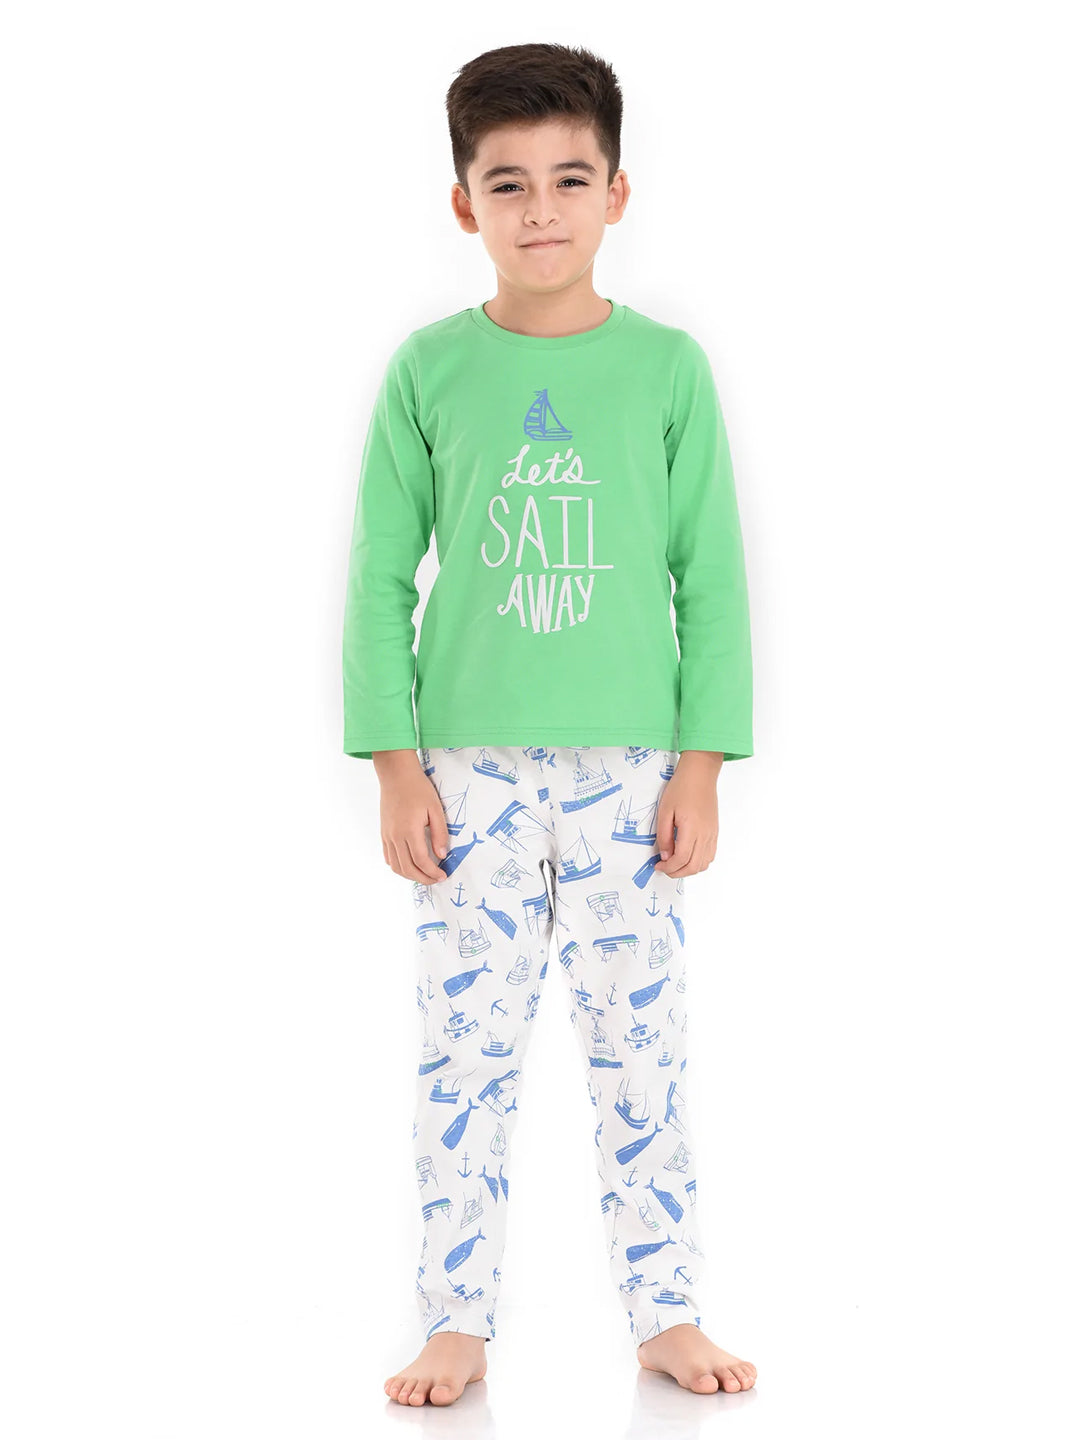 Sail Away pajamas